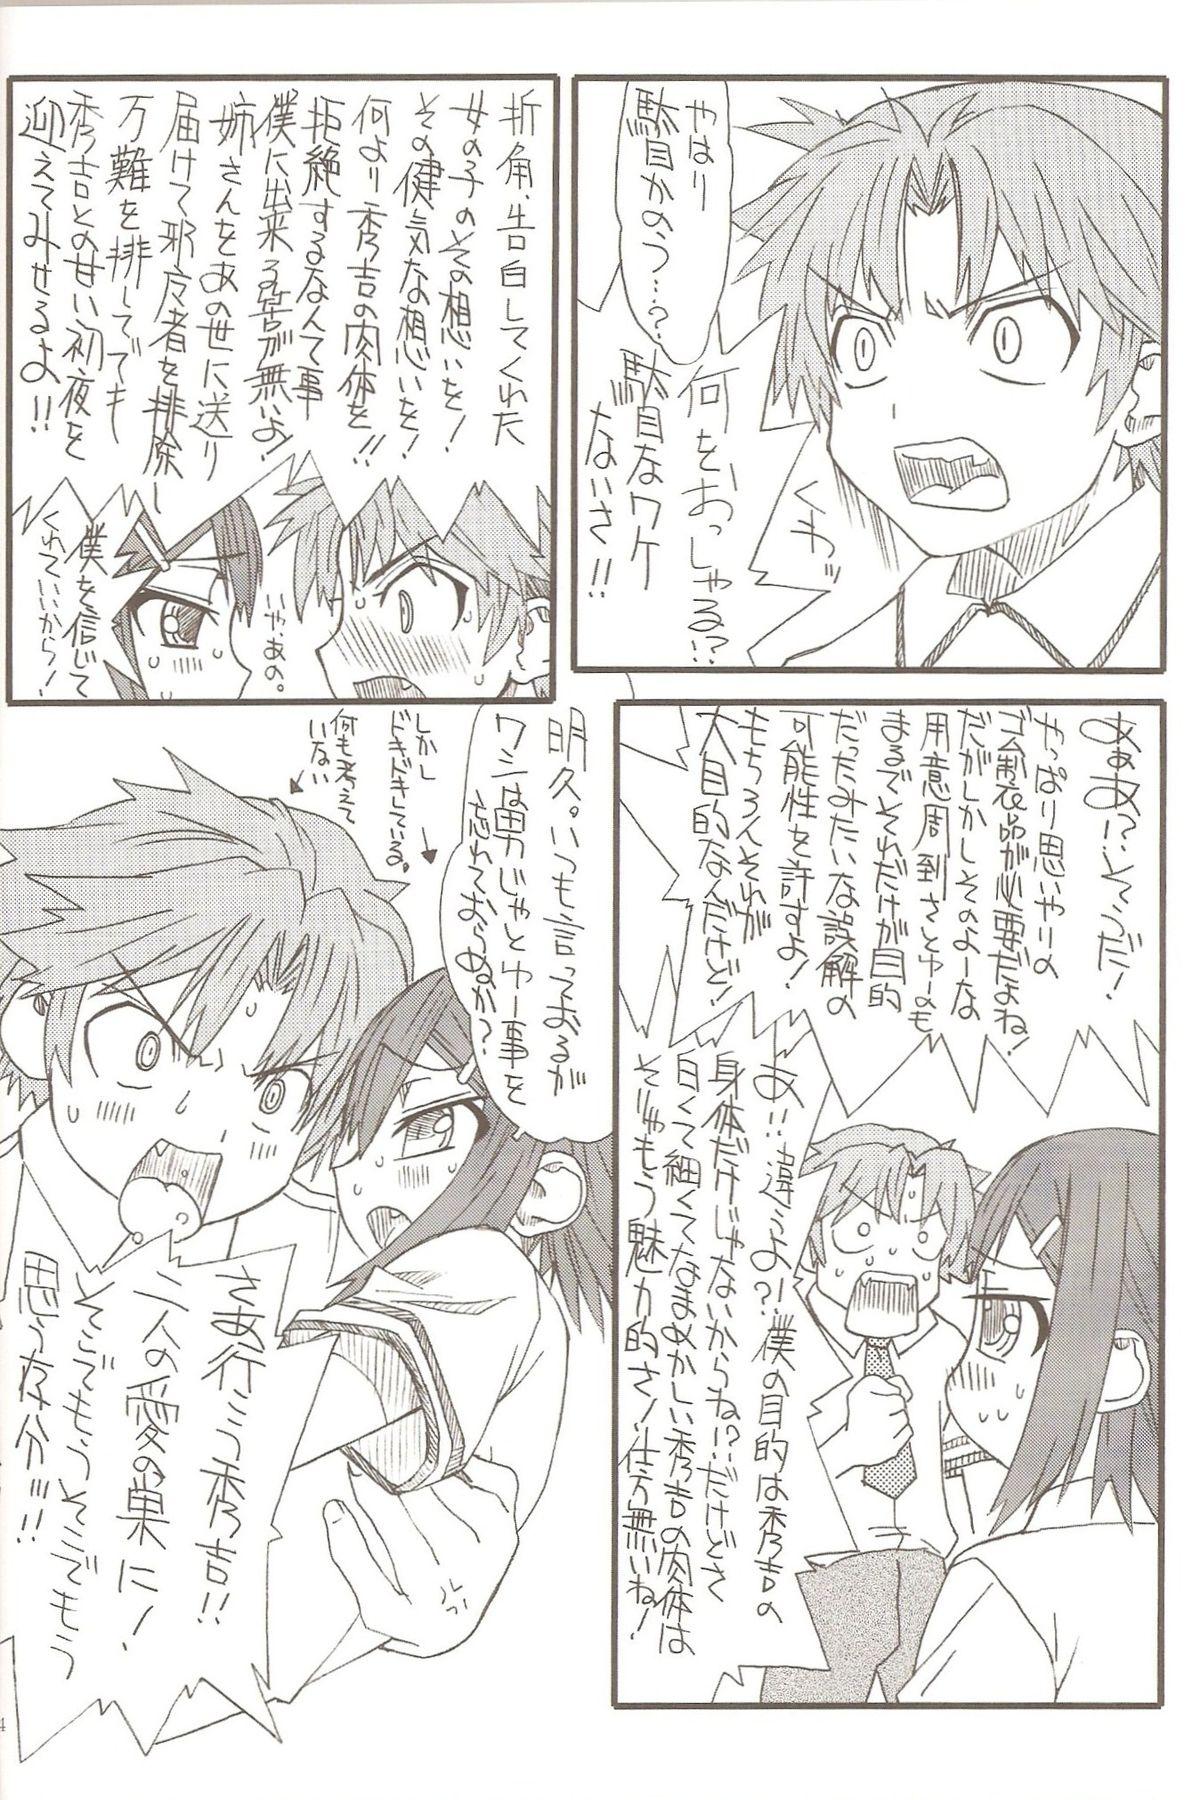 Lez Homo to Eros to Bishounen - Baka to test to shoukanjuu Step Fantasy - Page 2